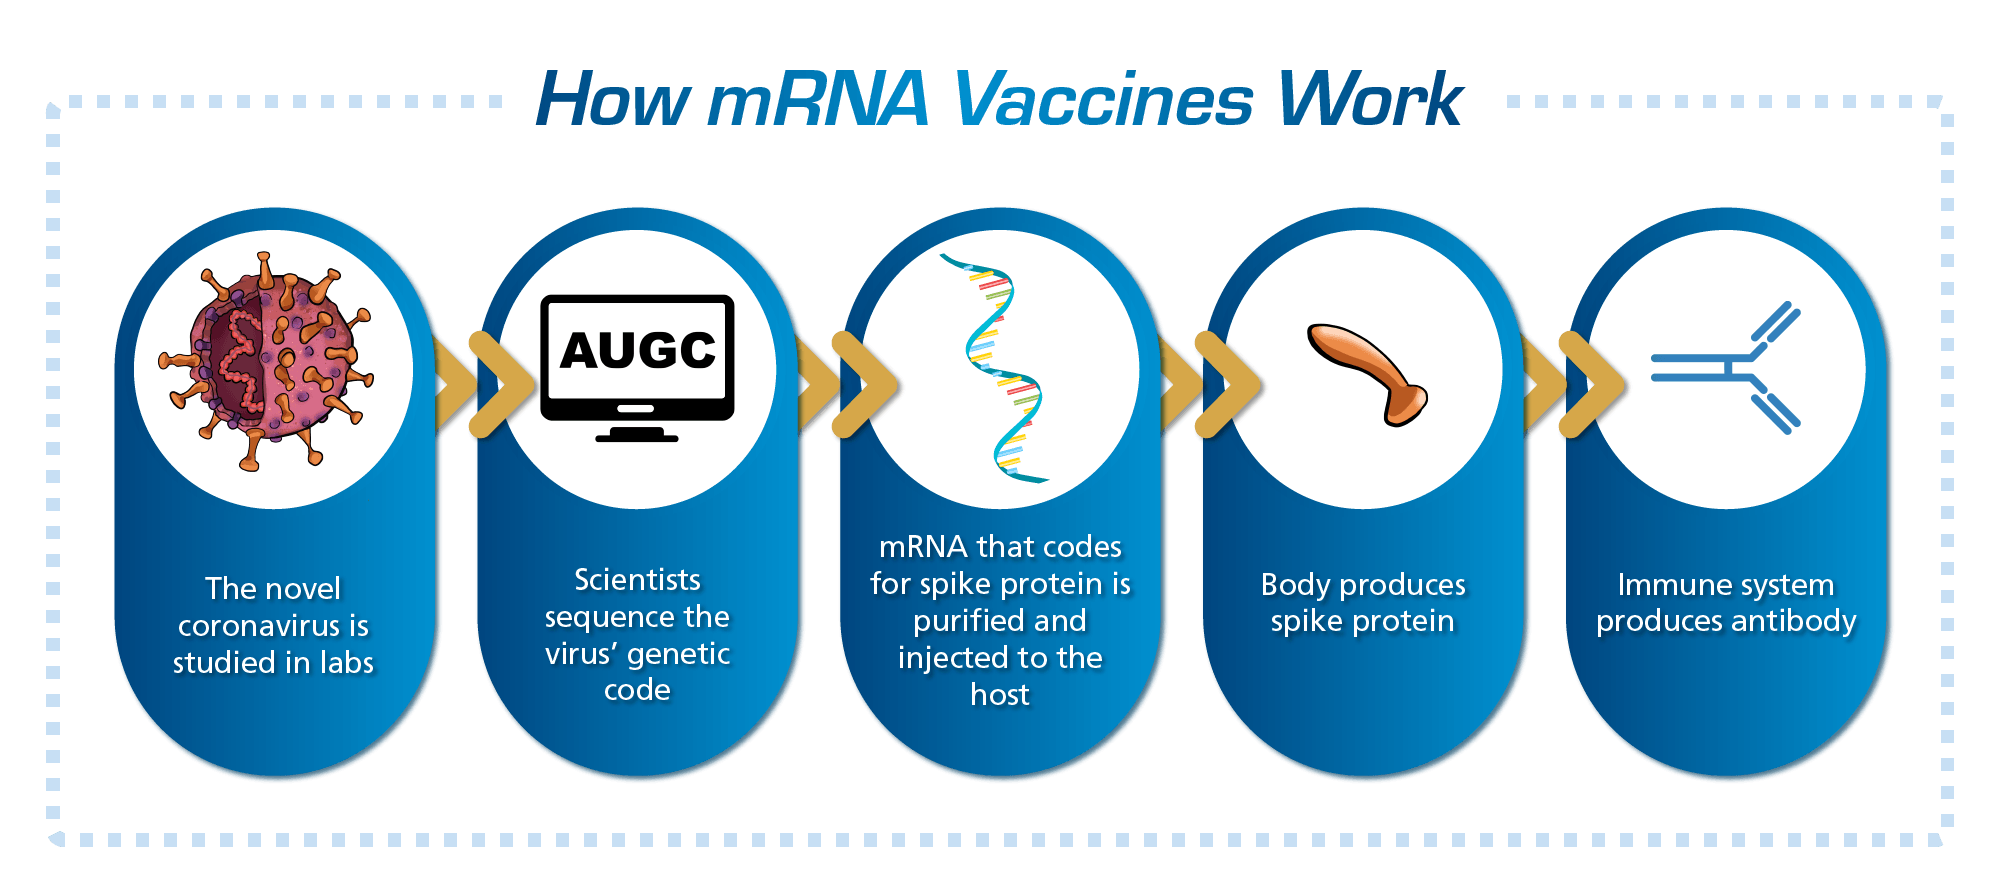 Figure 1. How mRNA Vaccines Work